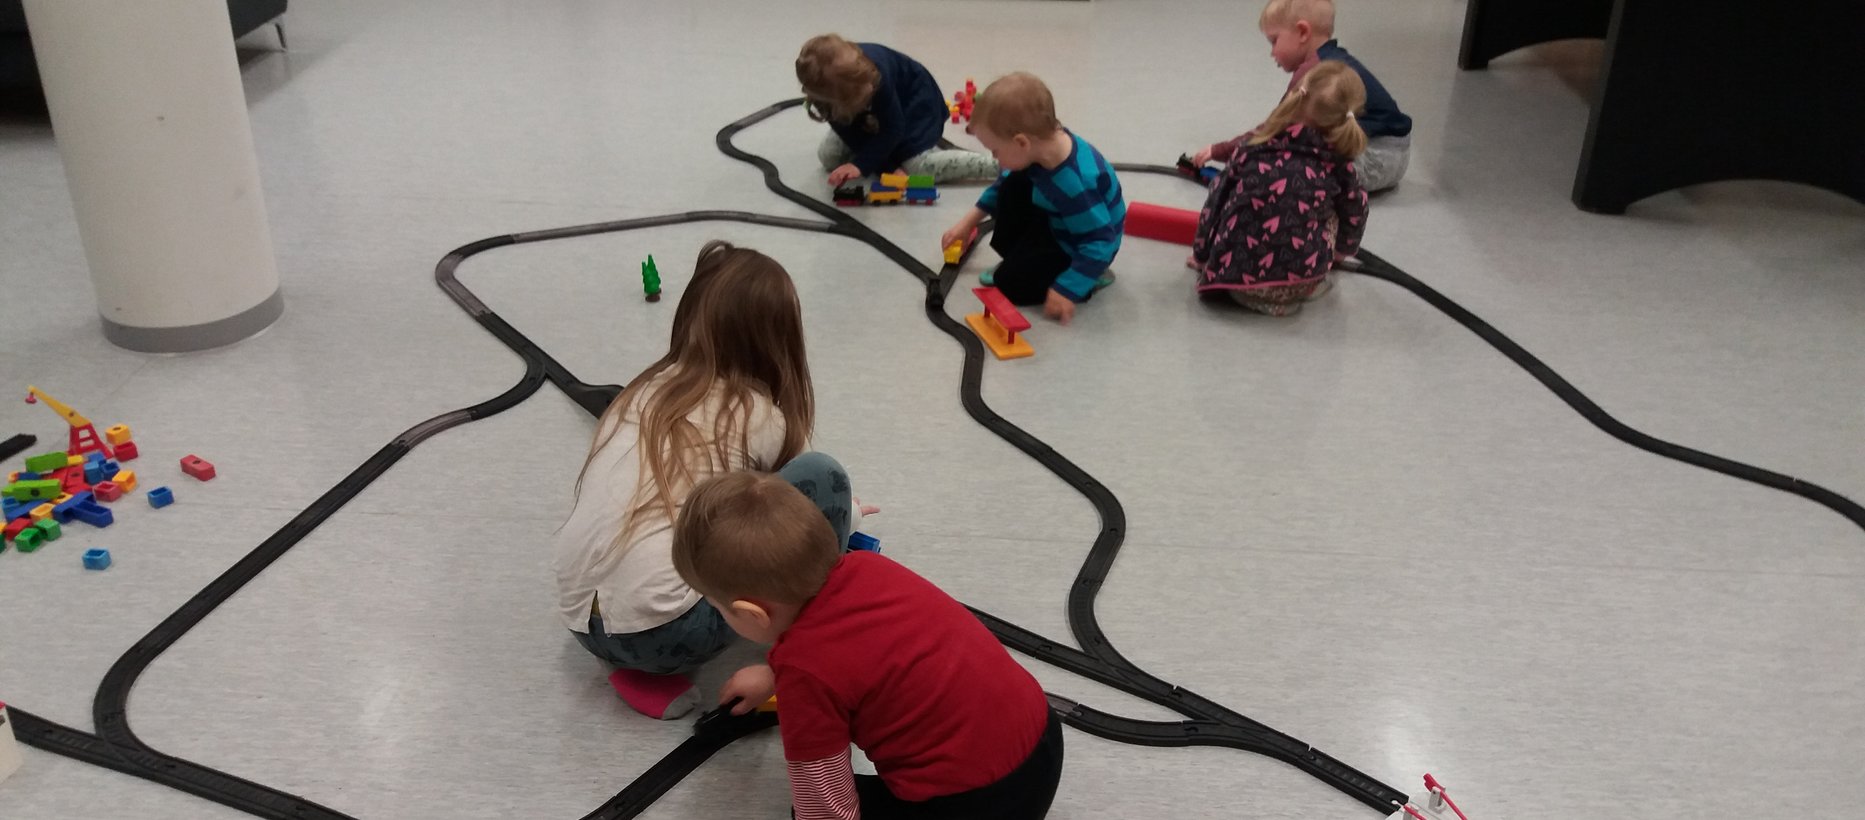 Lapset leikkivät lattialla muovisella junaradalla.